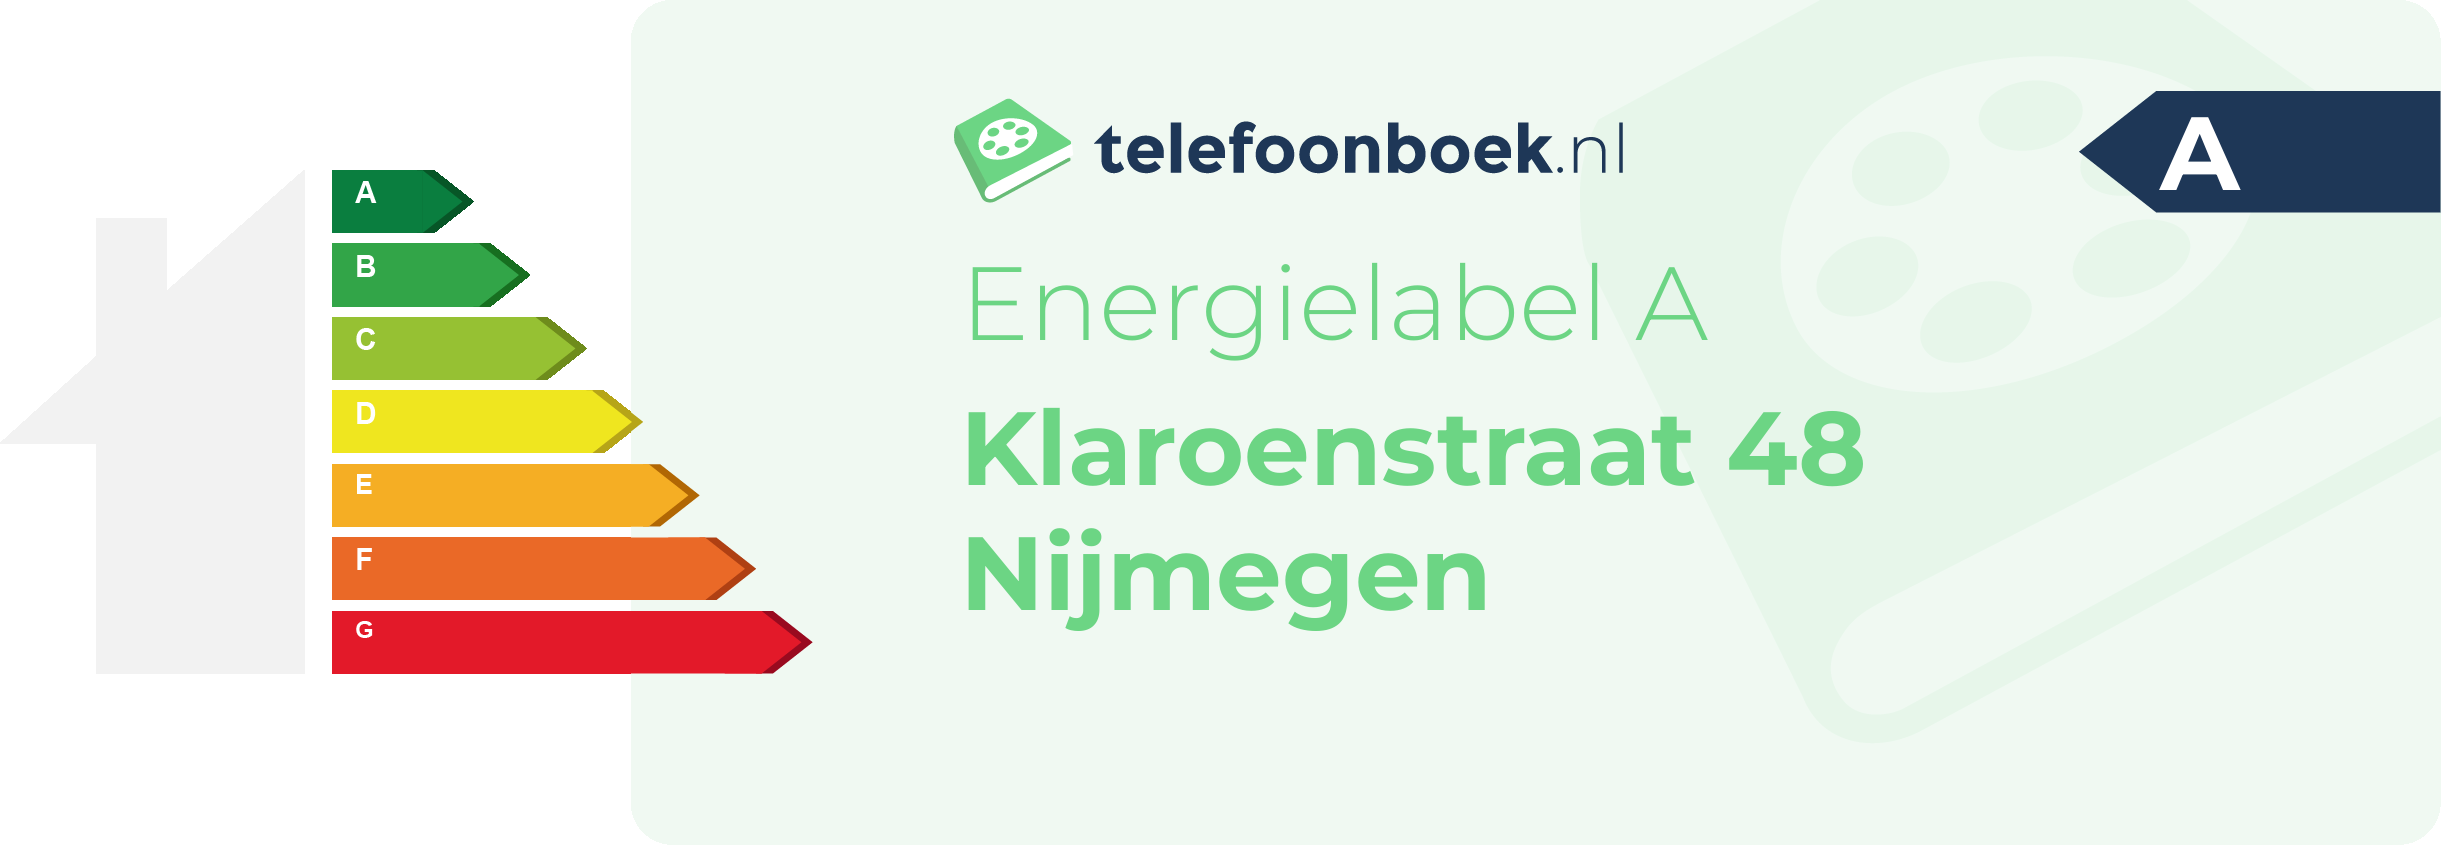 Energielabel Klaroenstraat 48 Nijmegen